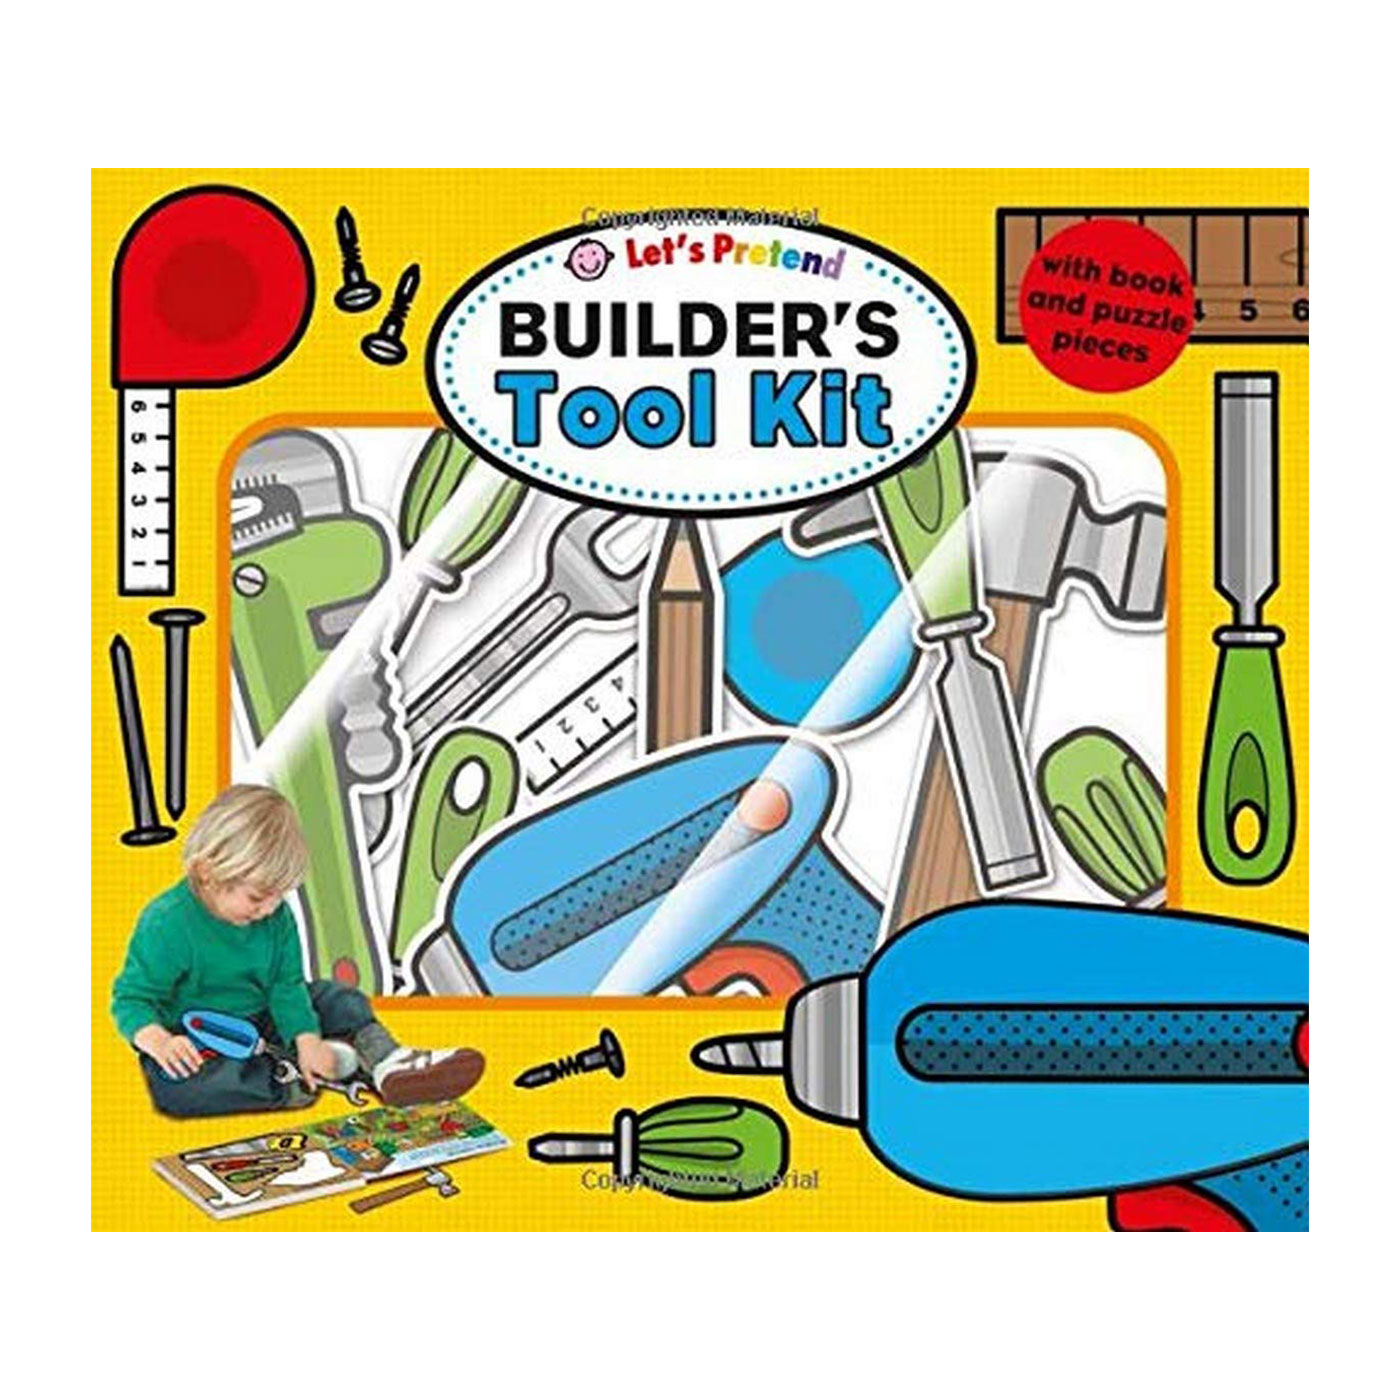  Let's Pretend Builders Tool Kit